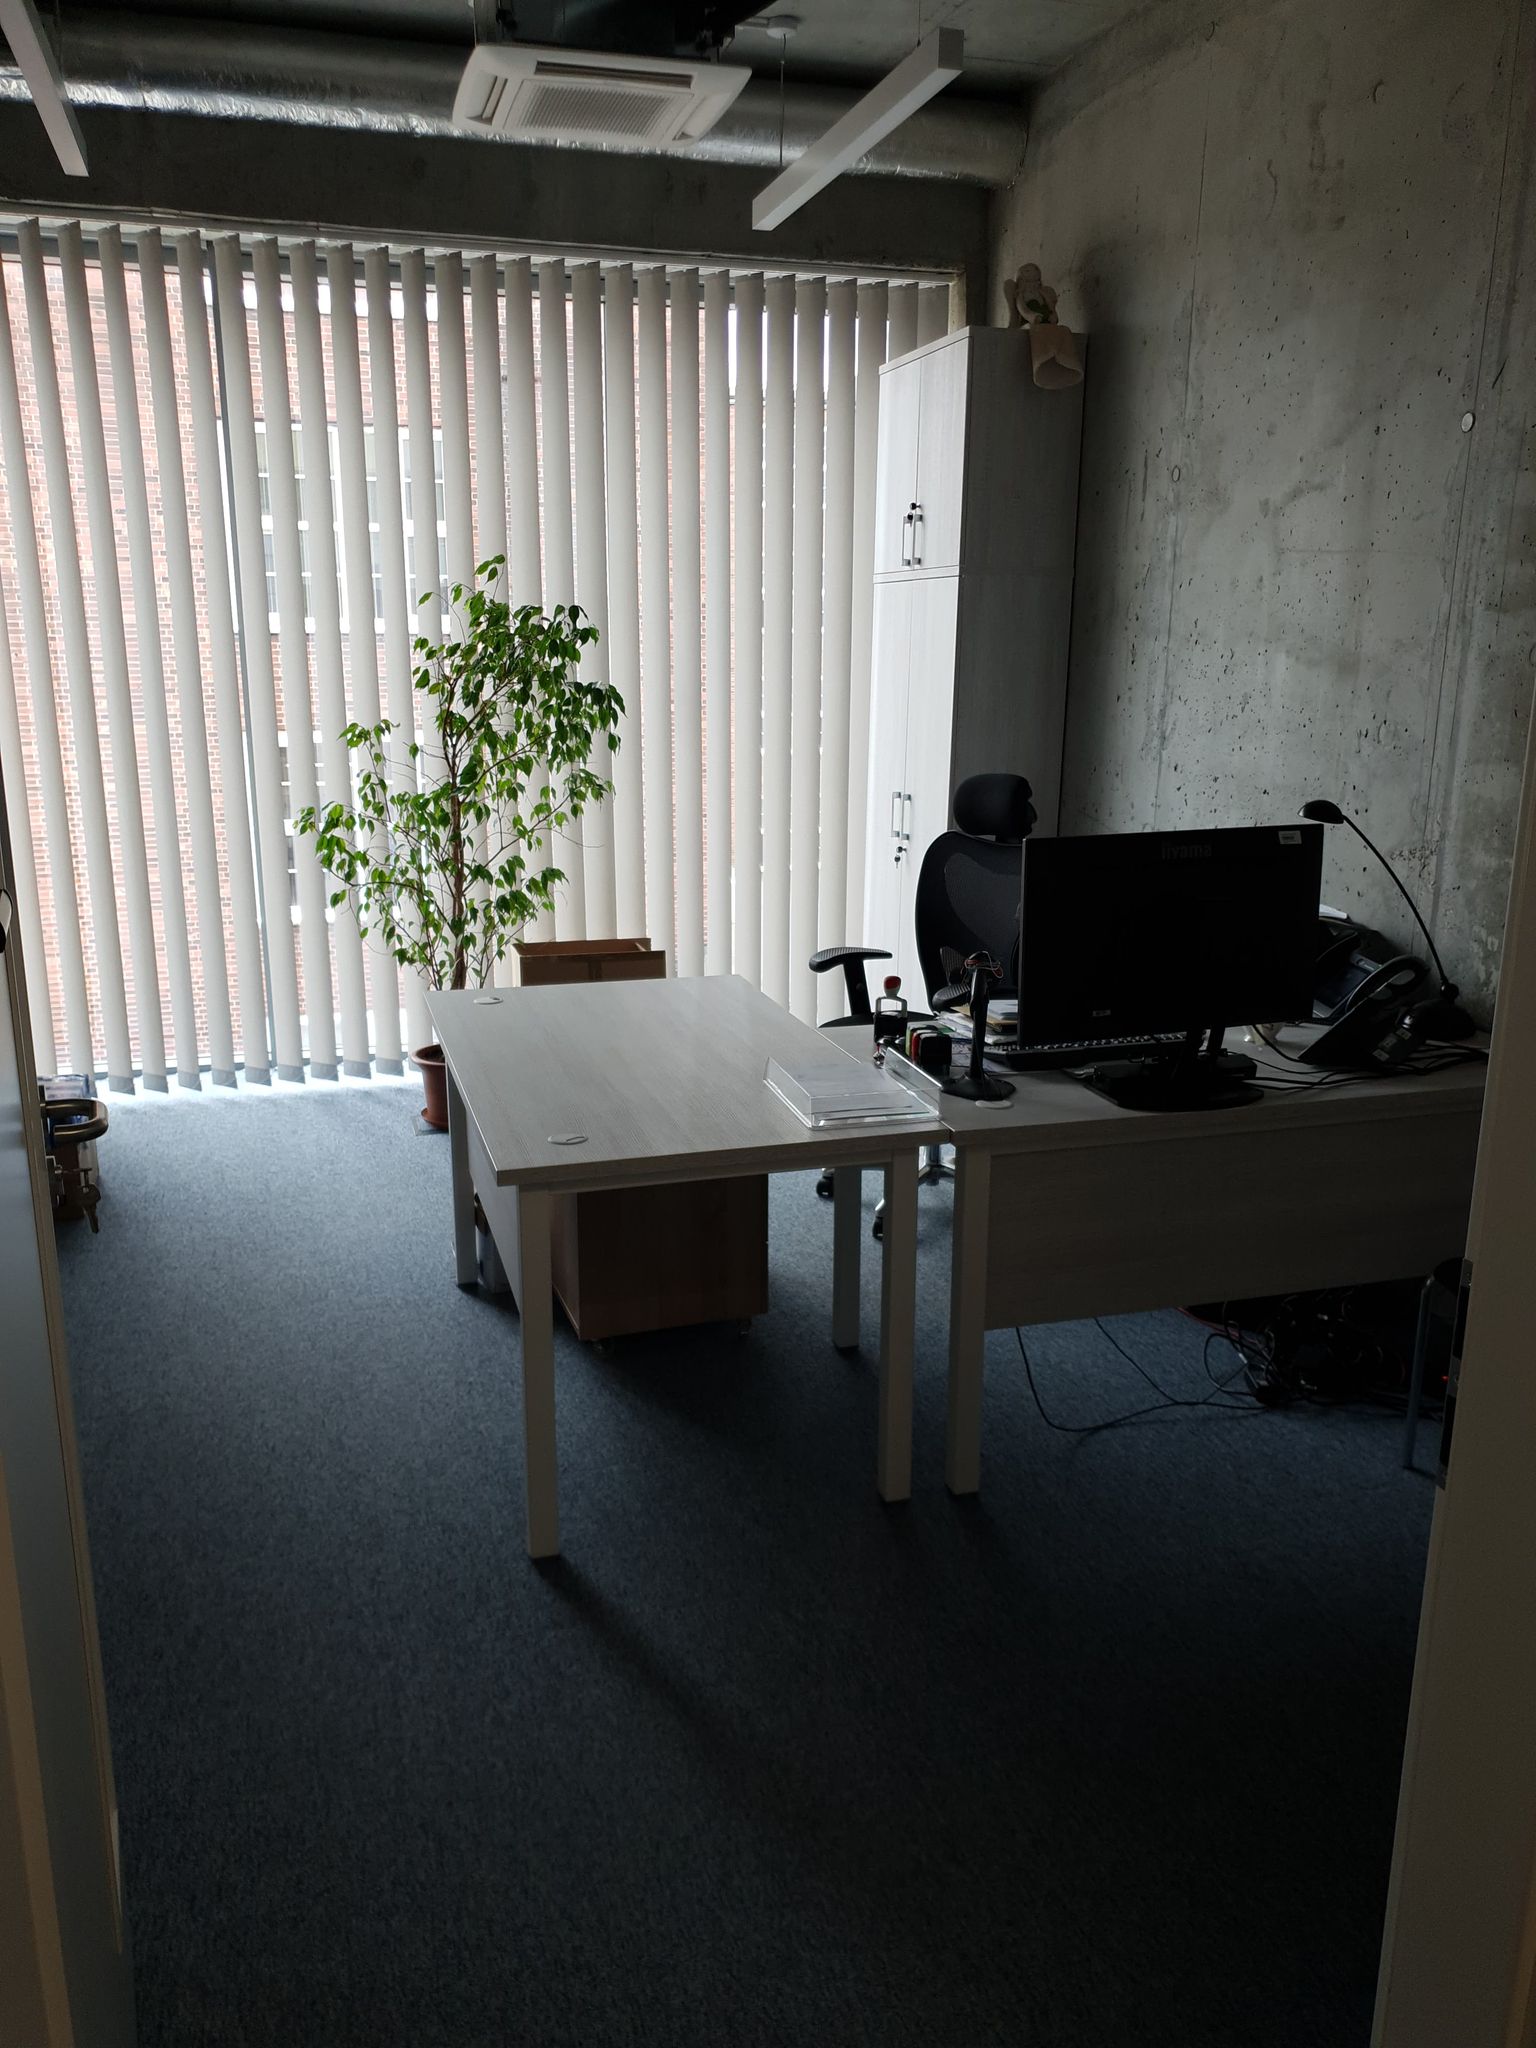 Widok wnętrza pokoju biurowego. Widoczne biurko z komputerem, po prawej stronie ściana koloru szarego. W tle widzimy okno zasłonięte pionowymi żaluzjami. Przy oknie szafa na dokumenty, a przed oknem, na podłodze, duża roślina w donicy 